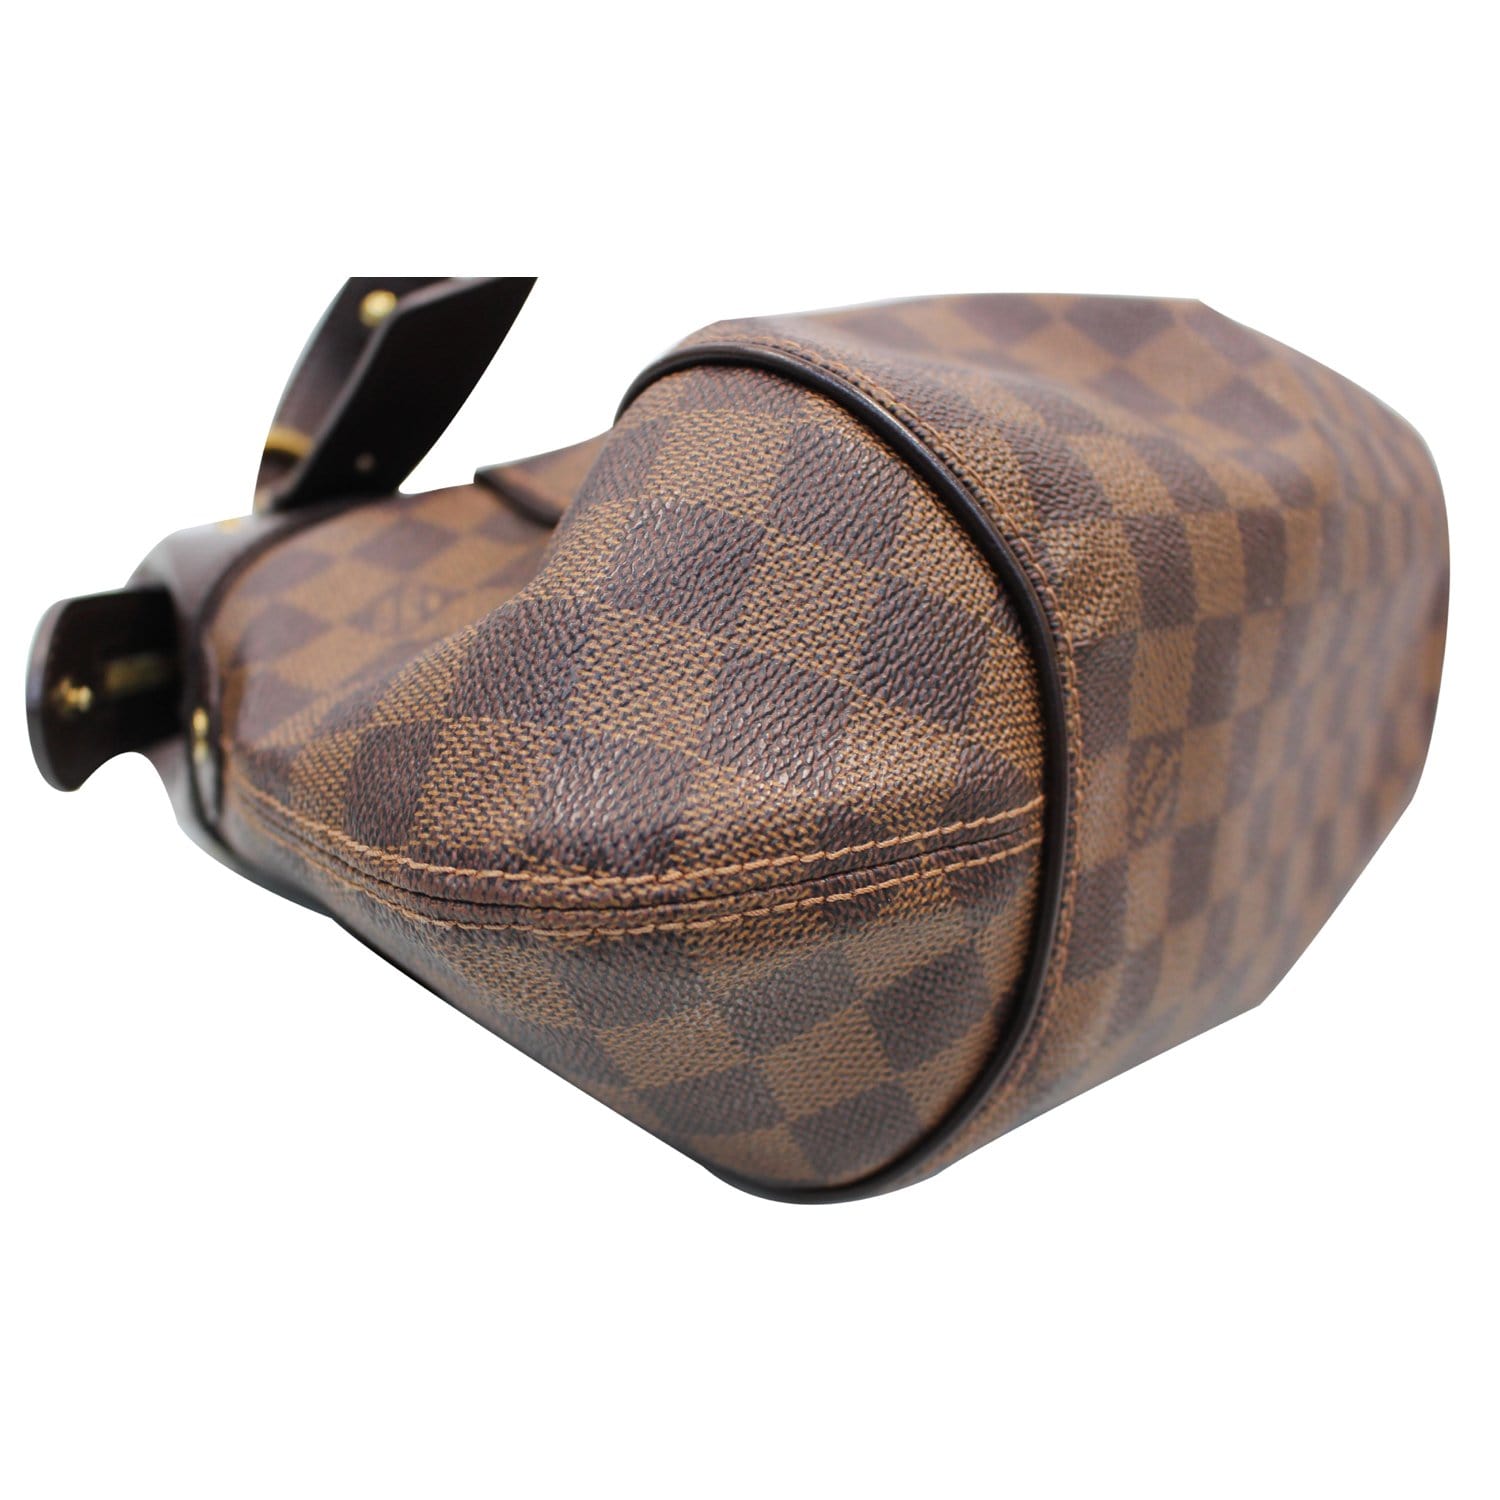 Louis Vuitton Damier Ebene Sistina PM Shoulder Bag 75lk328s For